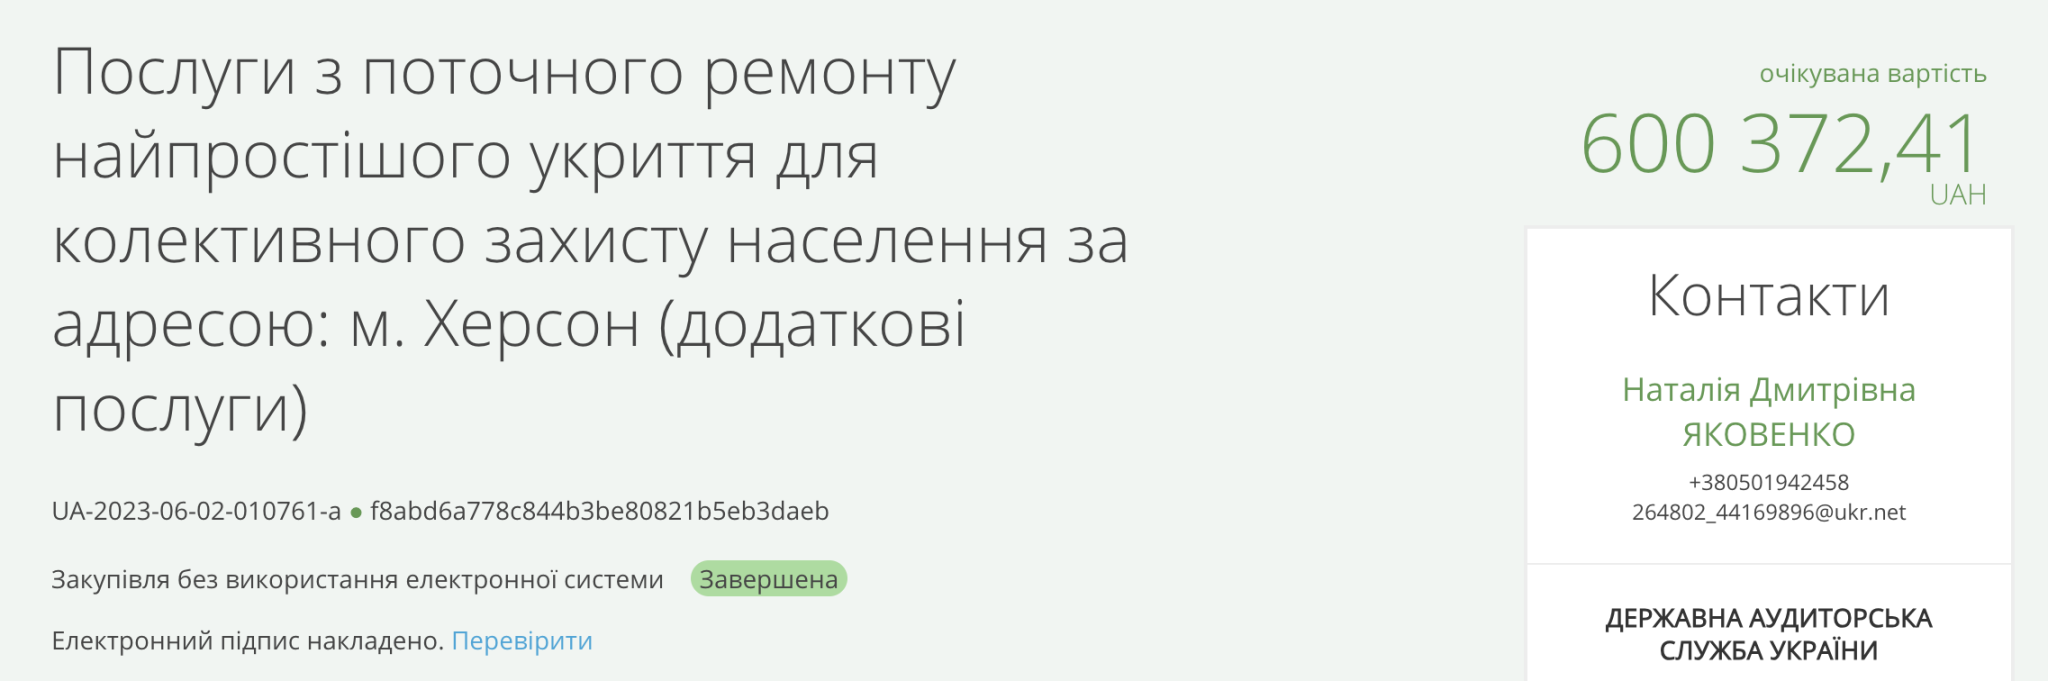 Труха телеграмм украина на русском языке смотреть онлайн бесплатно фото 113